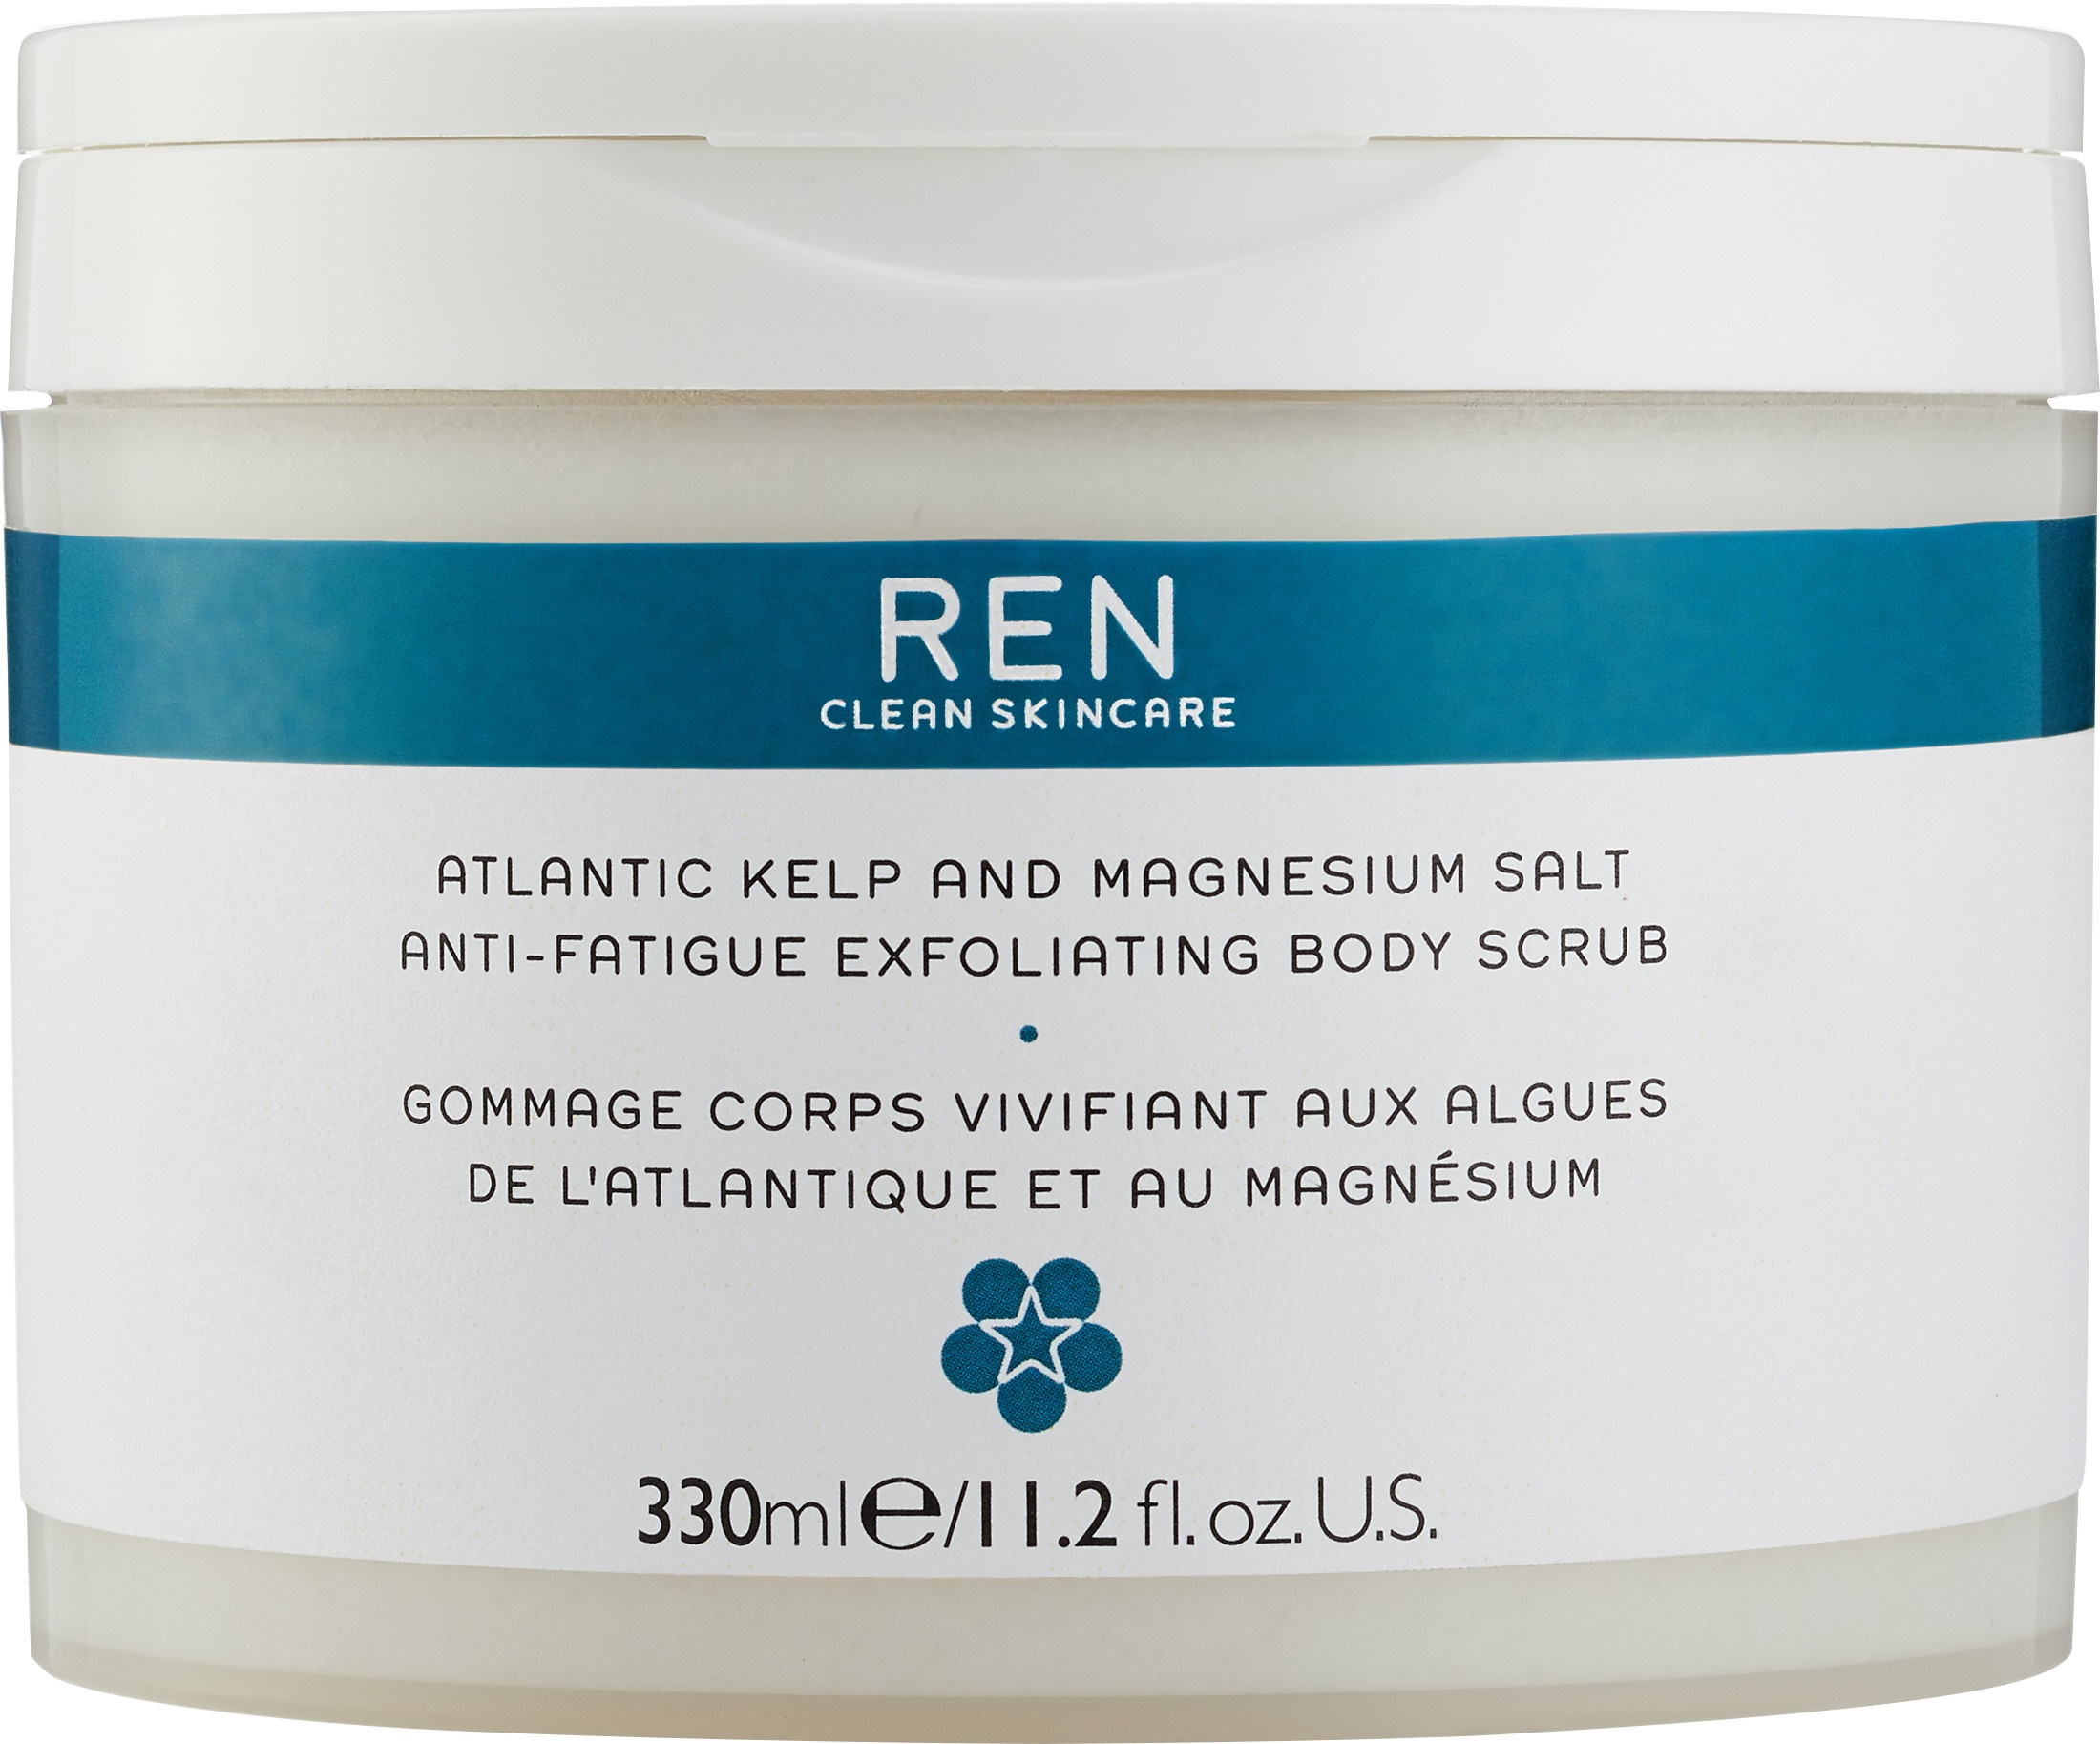 REN Clean Skincare Atlantic Kelp And Magnesium Salt Anti-Fatigue